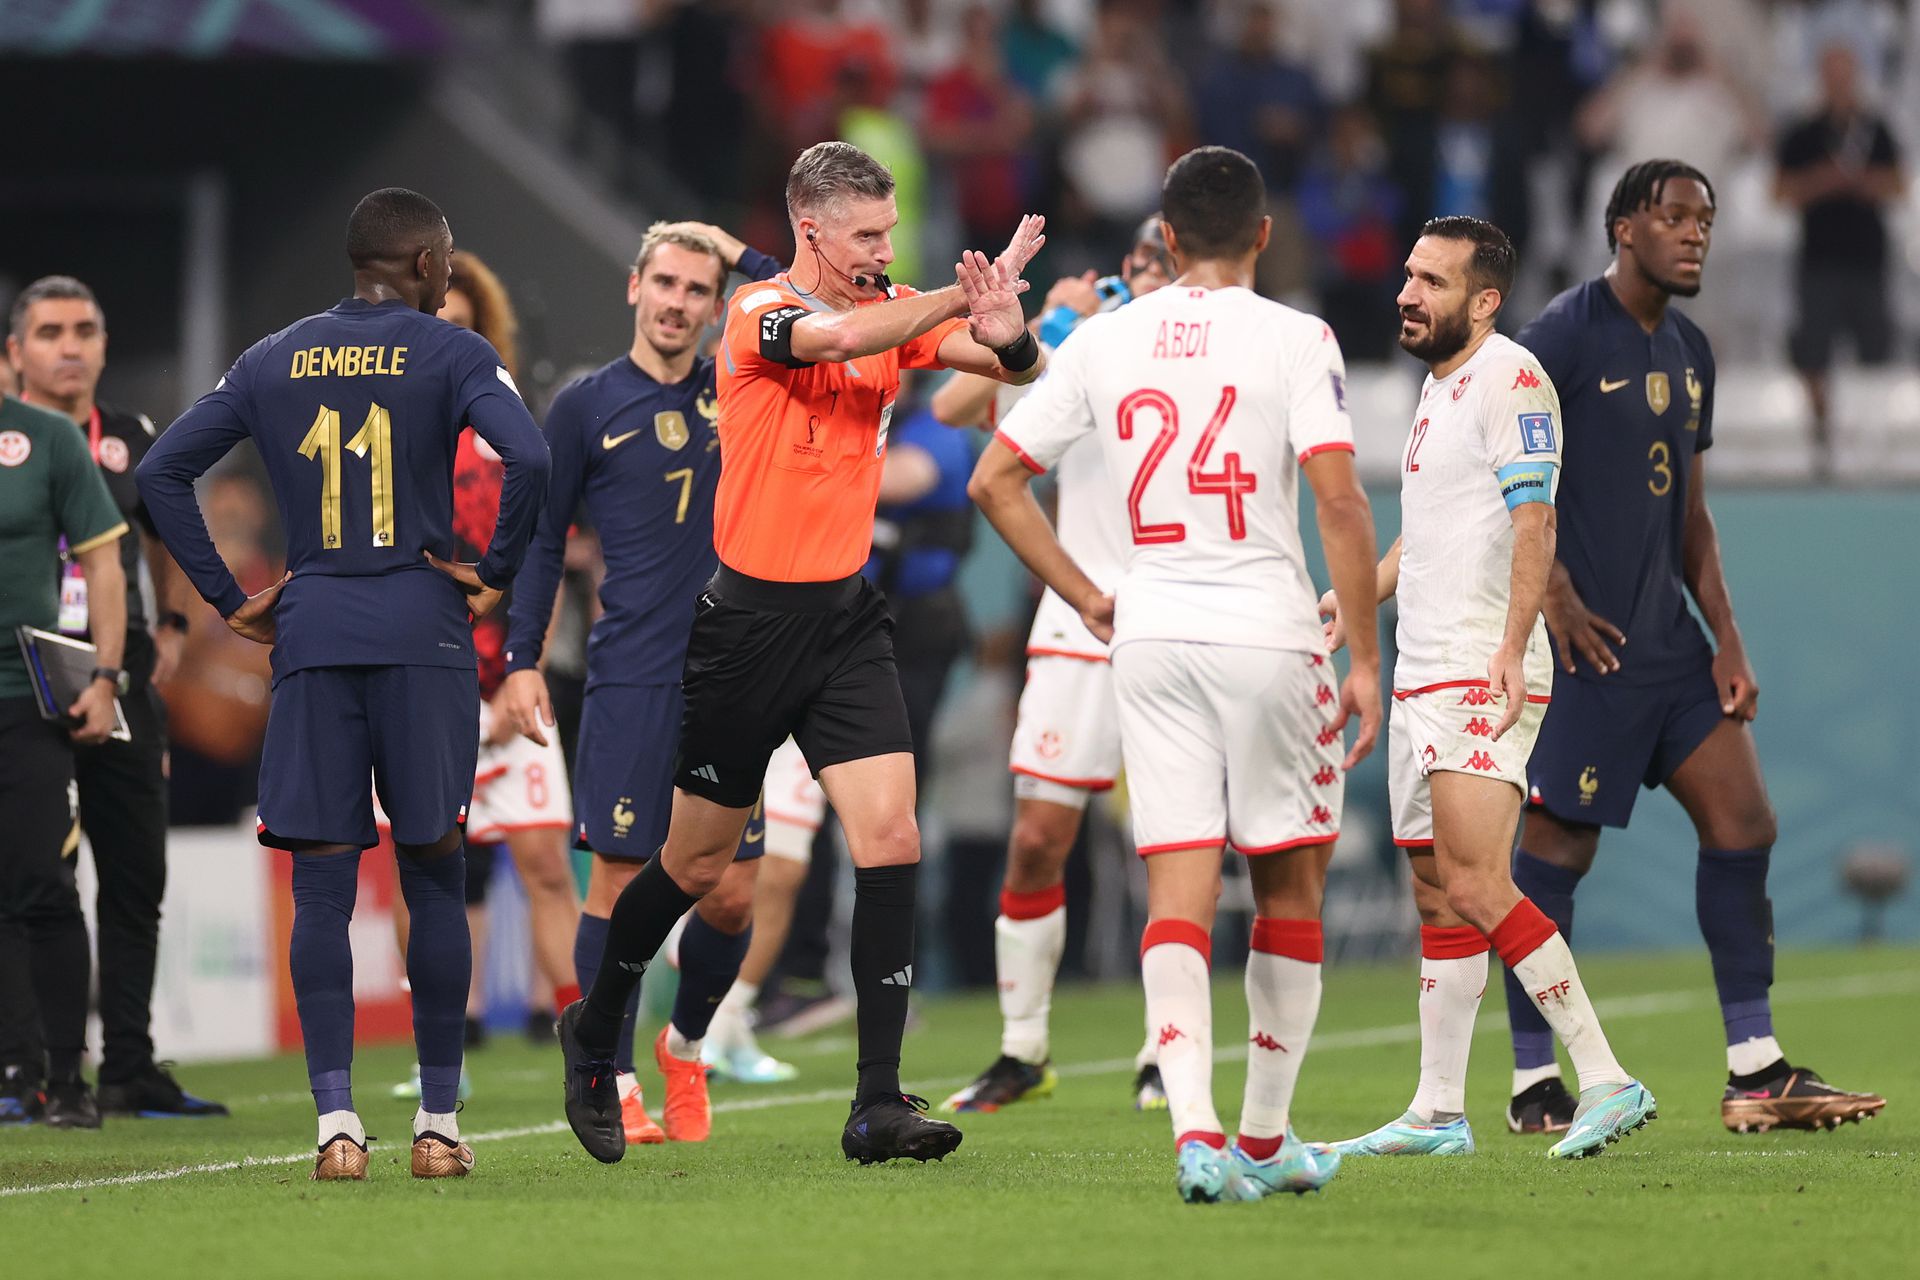 Bede állítja, a vébén az eddigi legnagyobb bakit a Tunézia-Franciaország (1-0) csoportmeccsen követték el, hiszen a VAR a lefújás után, új játékhelyzetet követően már nem vizsgálhatta volna Griezmann gólját